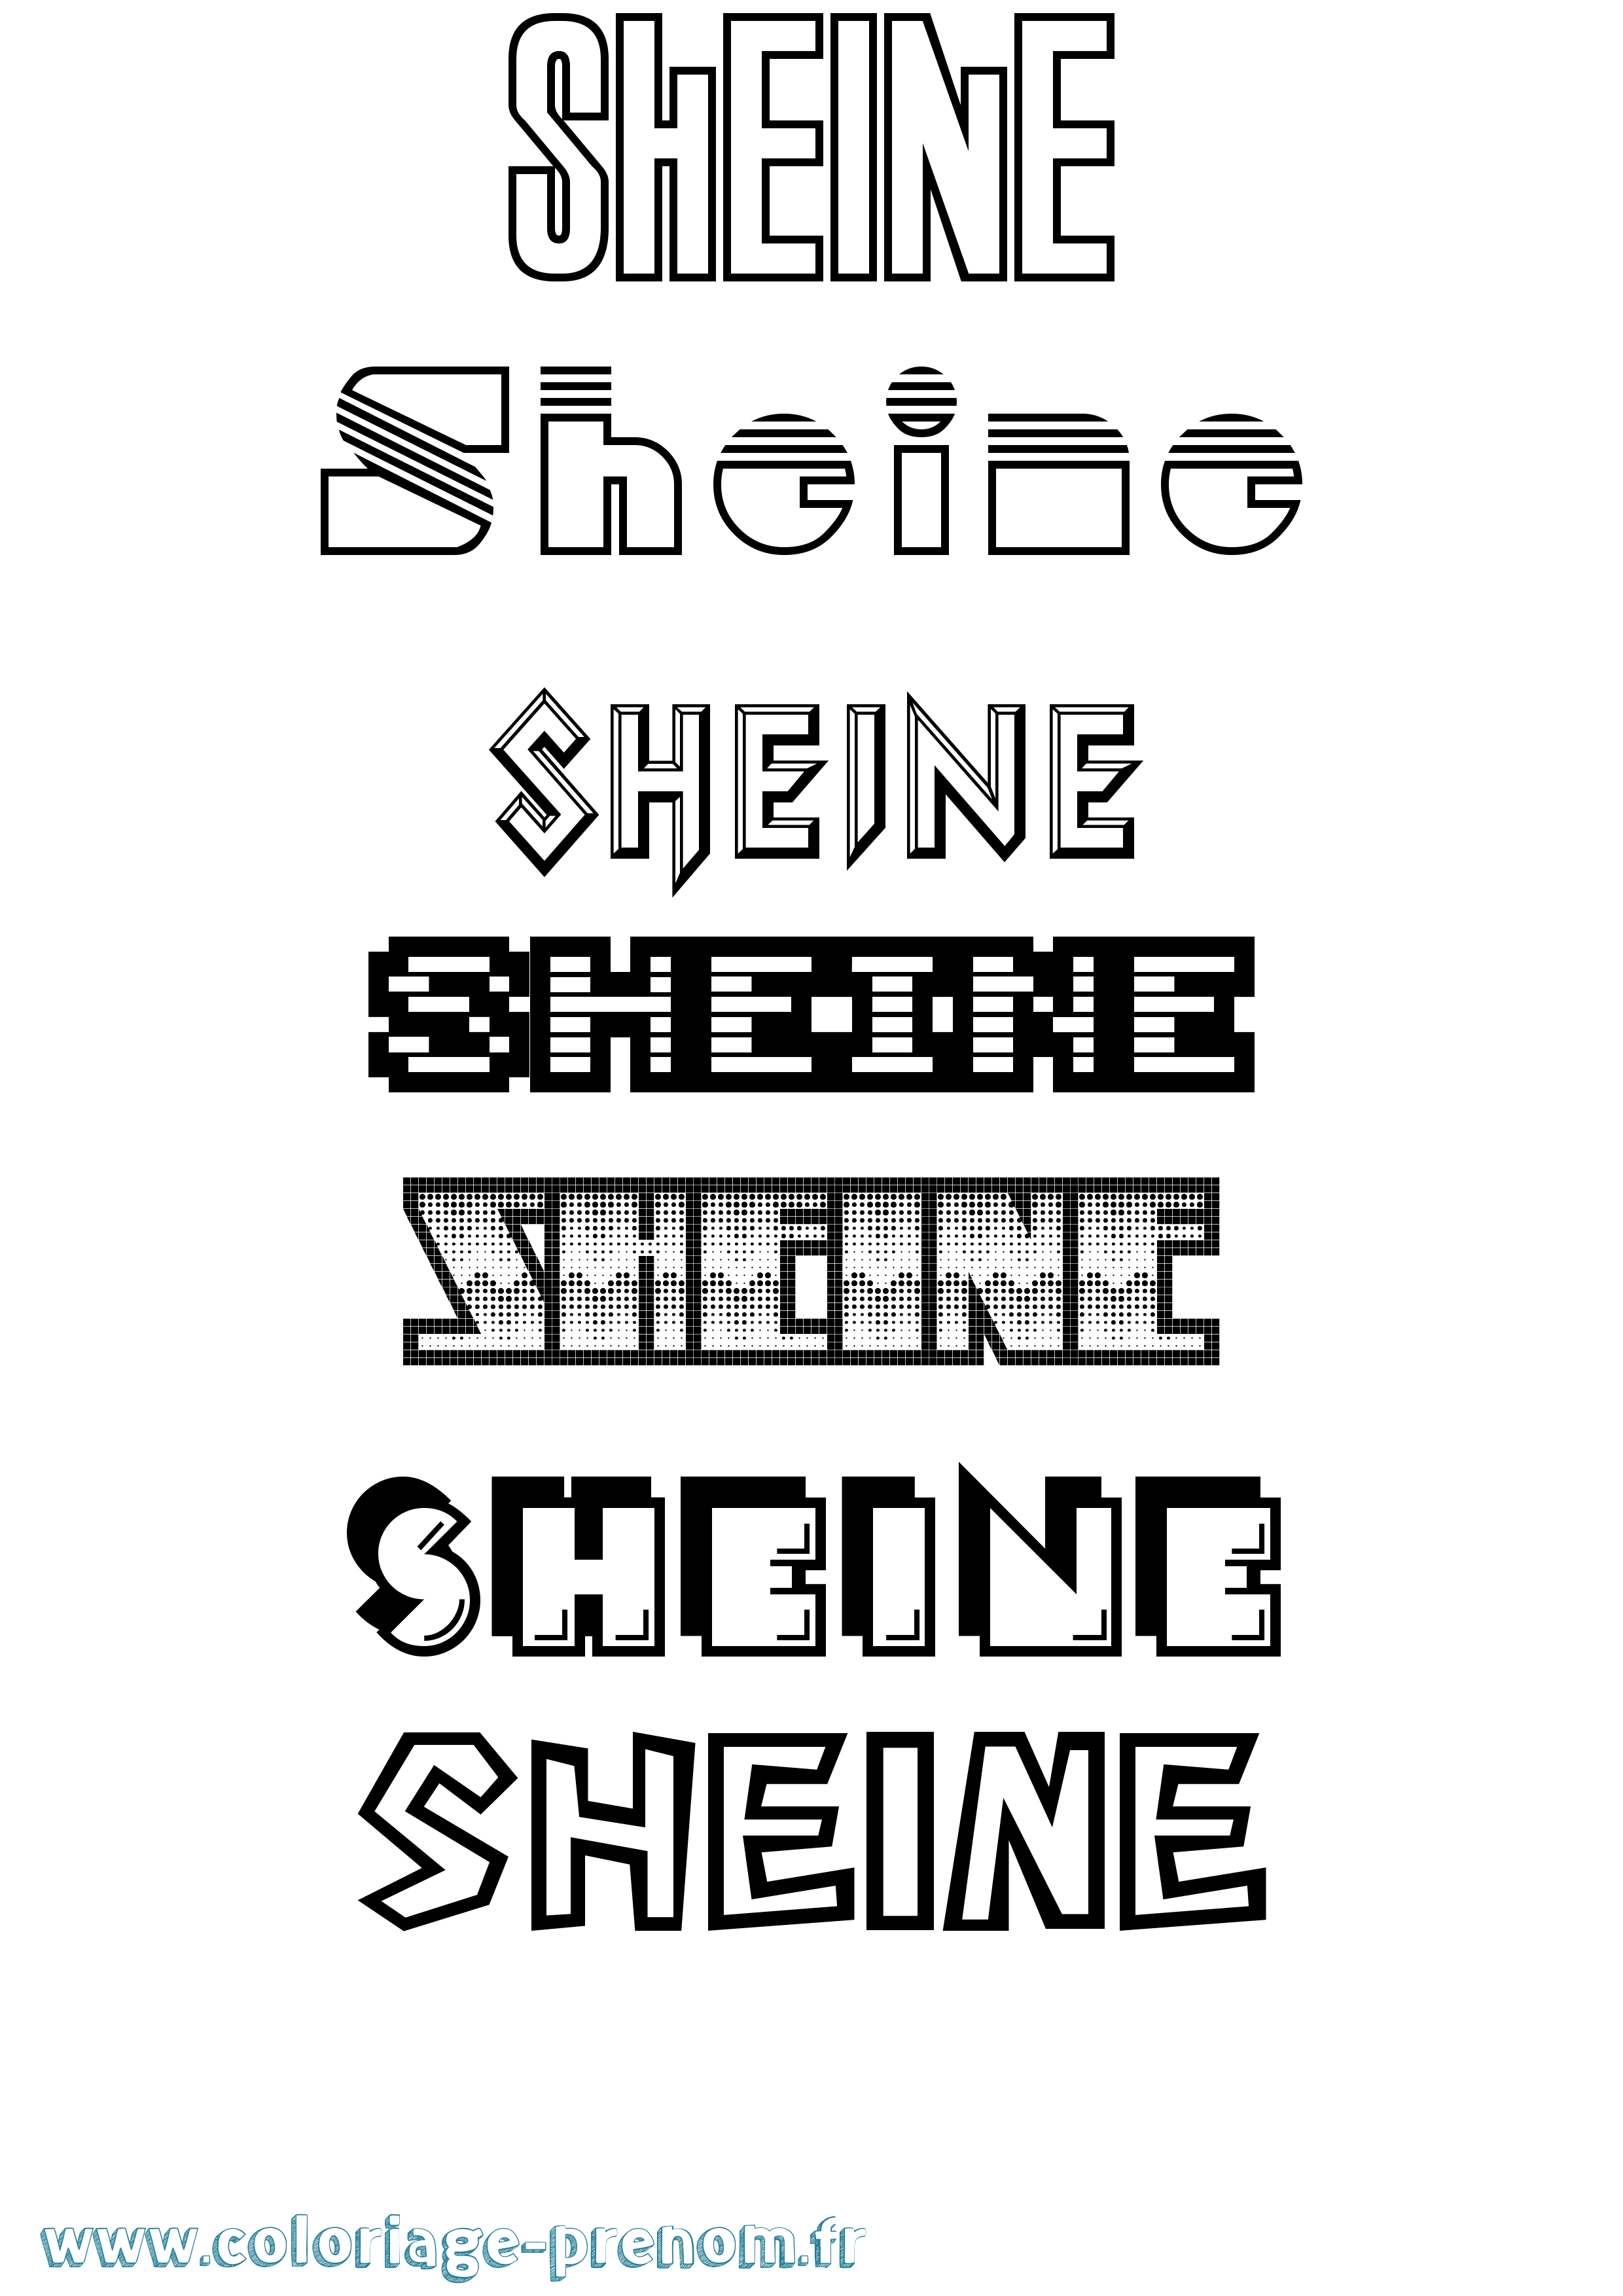 Coloriage prénom Sheine Jeux Vidéos